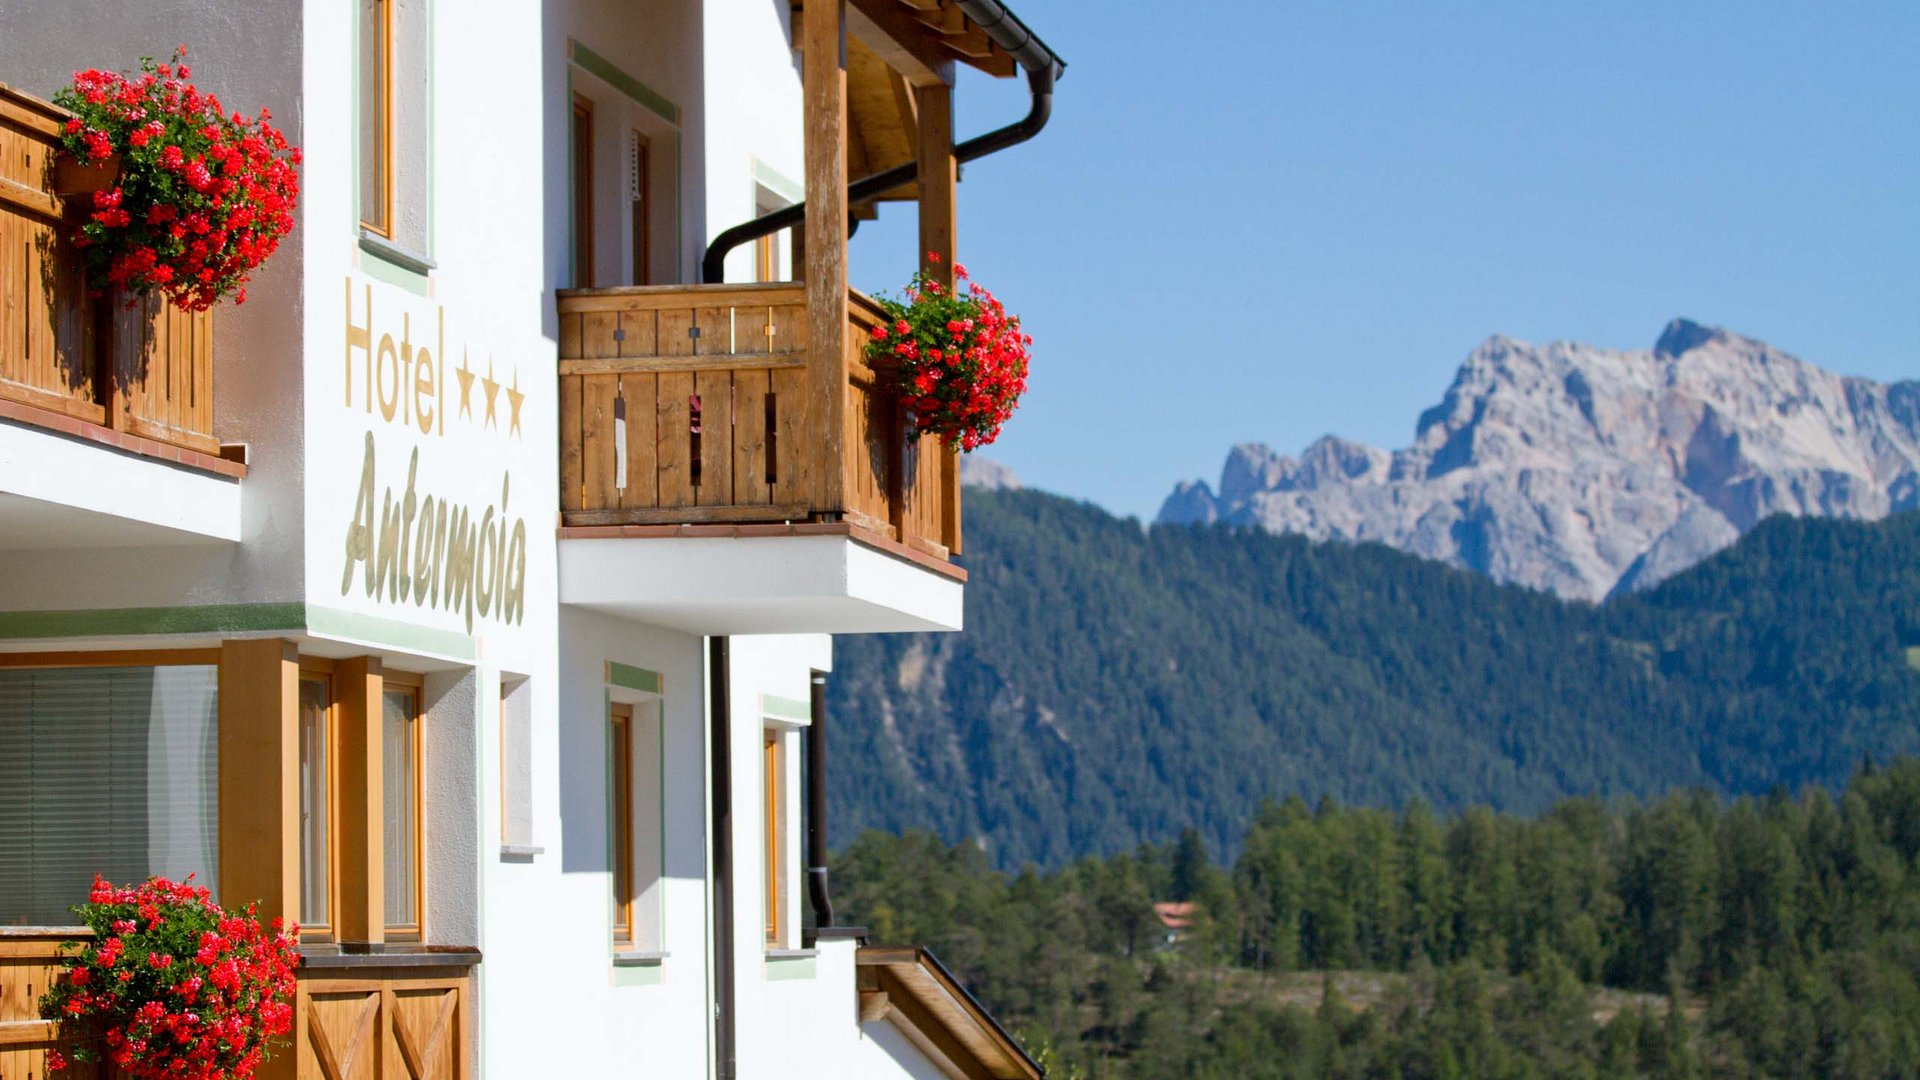 Hotel Antermoia: un gioiello incastonato tra i monti